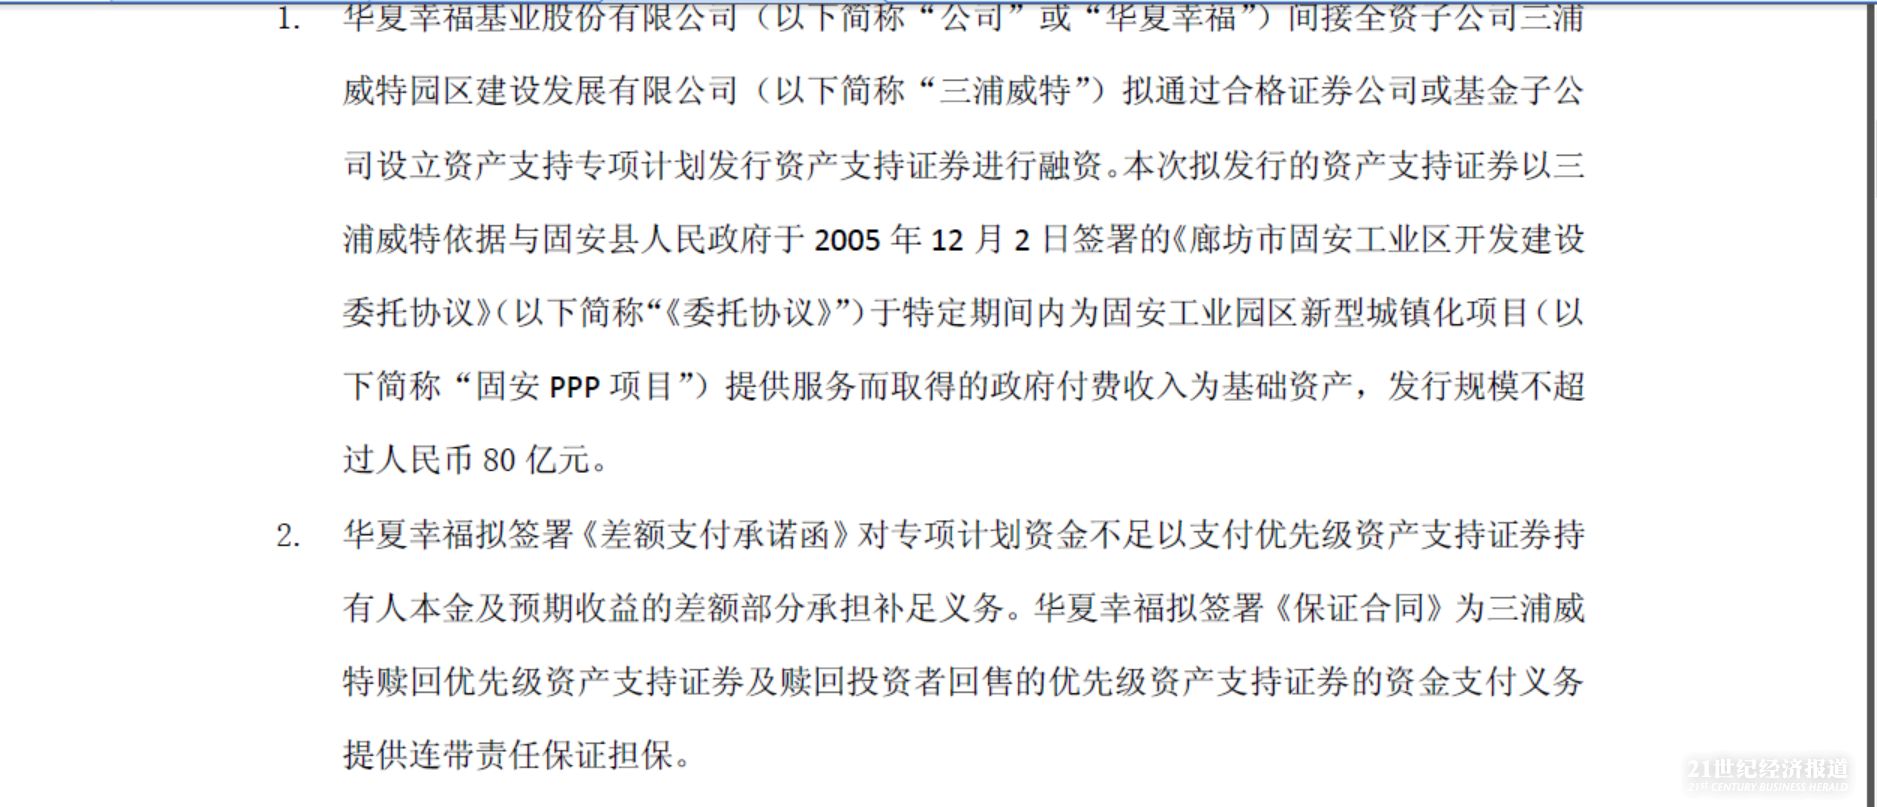 PPP资产证券化首单落地 首创股份、华夏幸福